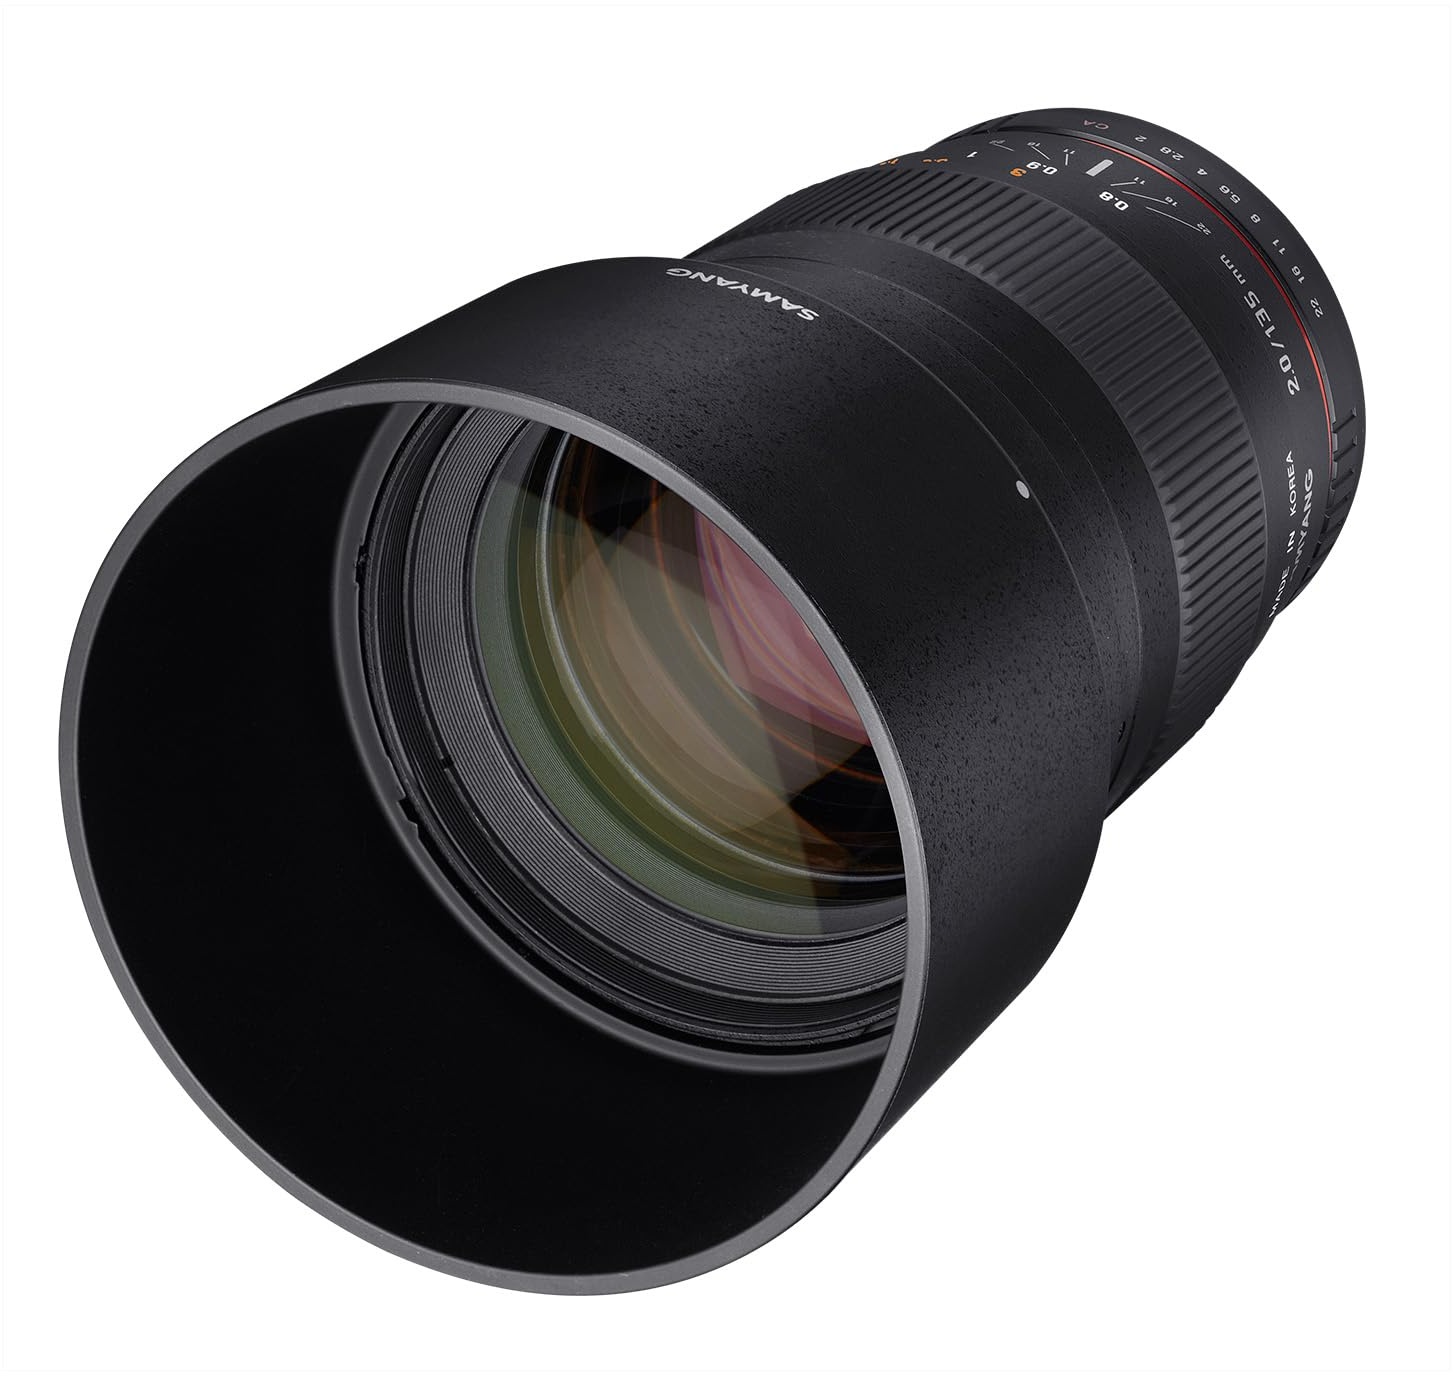 Samyang 135mm F2.0 für Canon EF - Vollformat und APS-C Teleobjektiv Festbrennweite für Canon Kamera mit EF/ EF-S Mount, manueller Fokus, für Canon EOS-1D X Mark III, 6D Mark II, 5D Mark IV